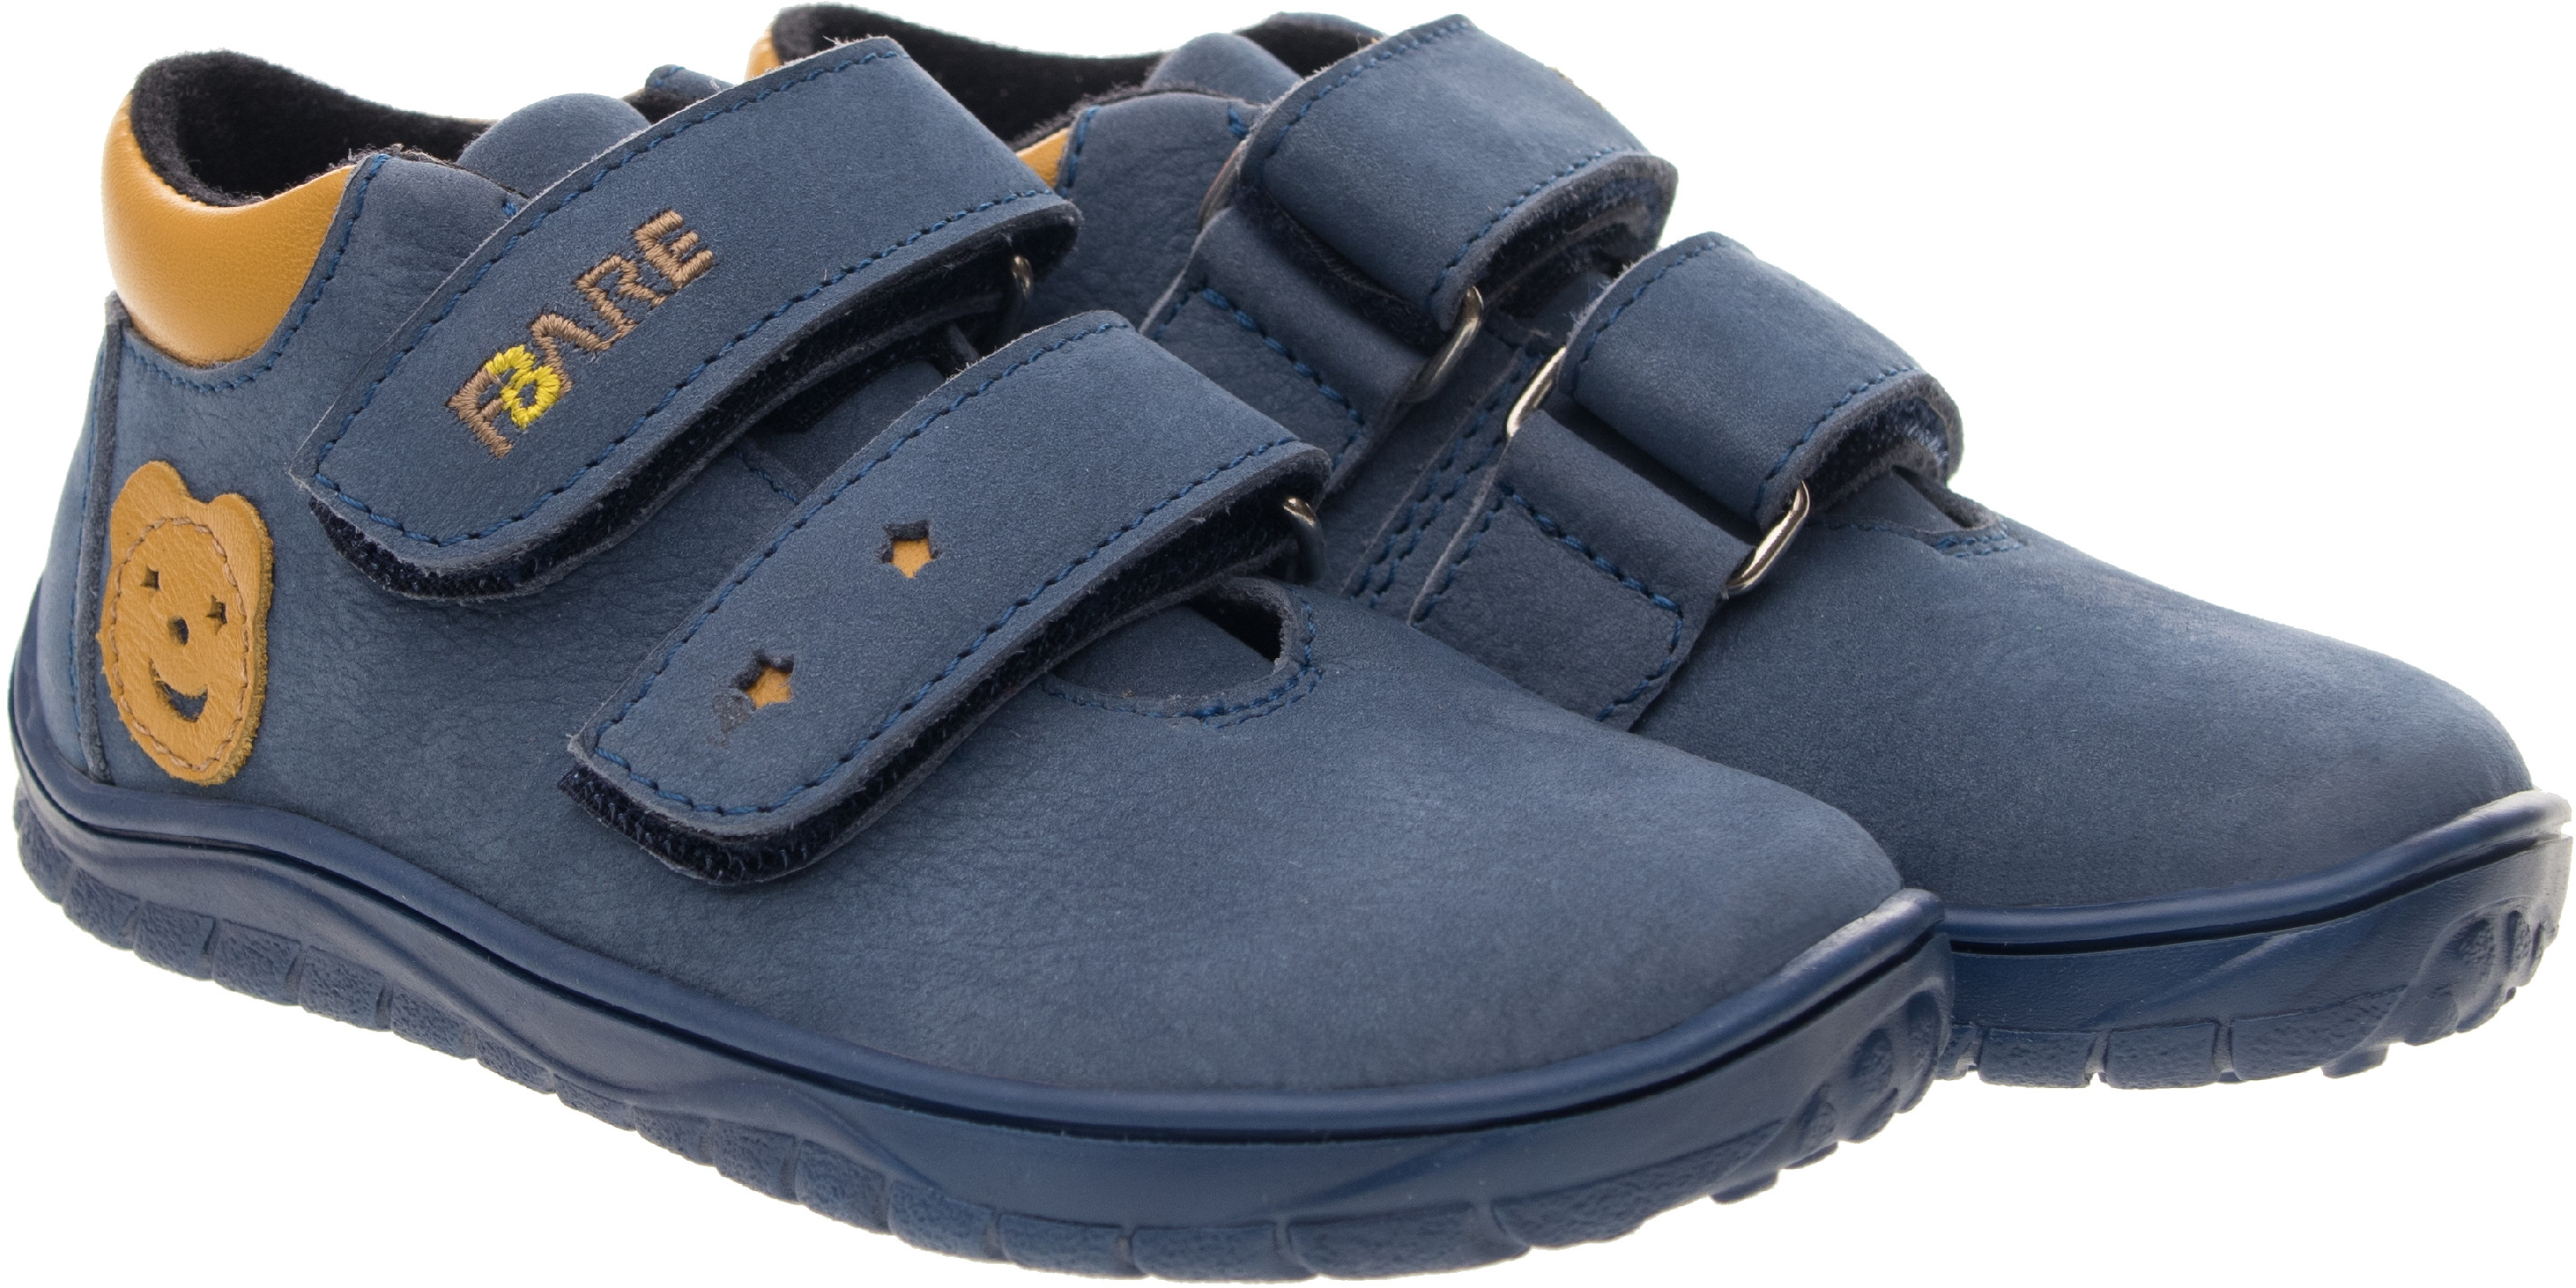 FARE BARE dětské nepromokavé celoroční boty B5426201 Velikost obuvi: 27